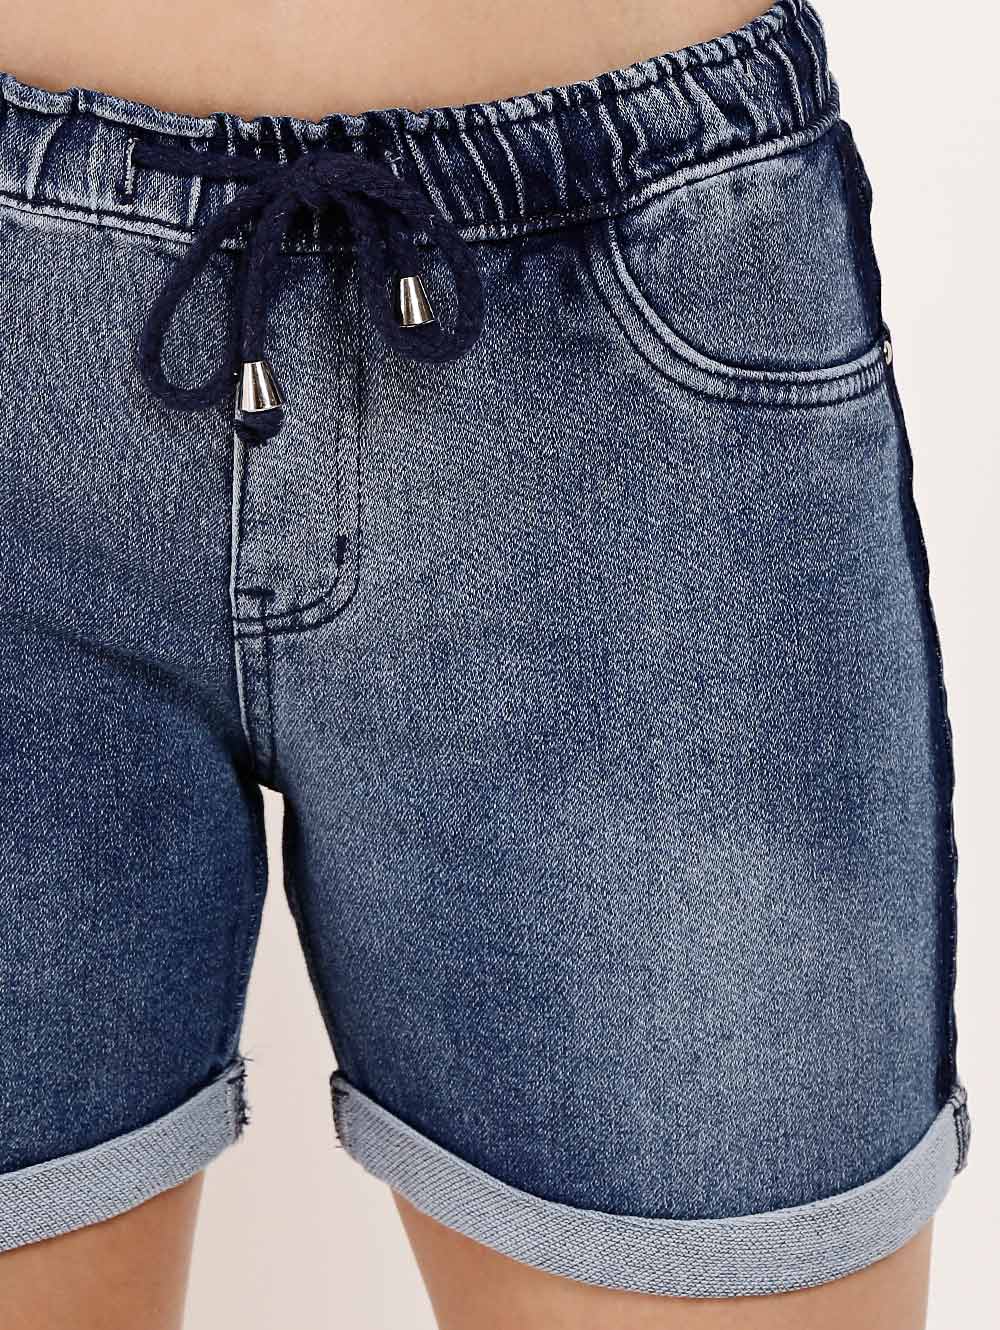 shorts jeans moletom feminino